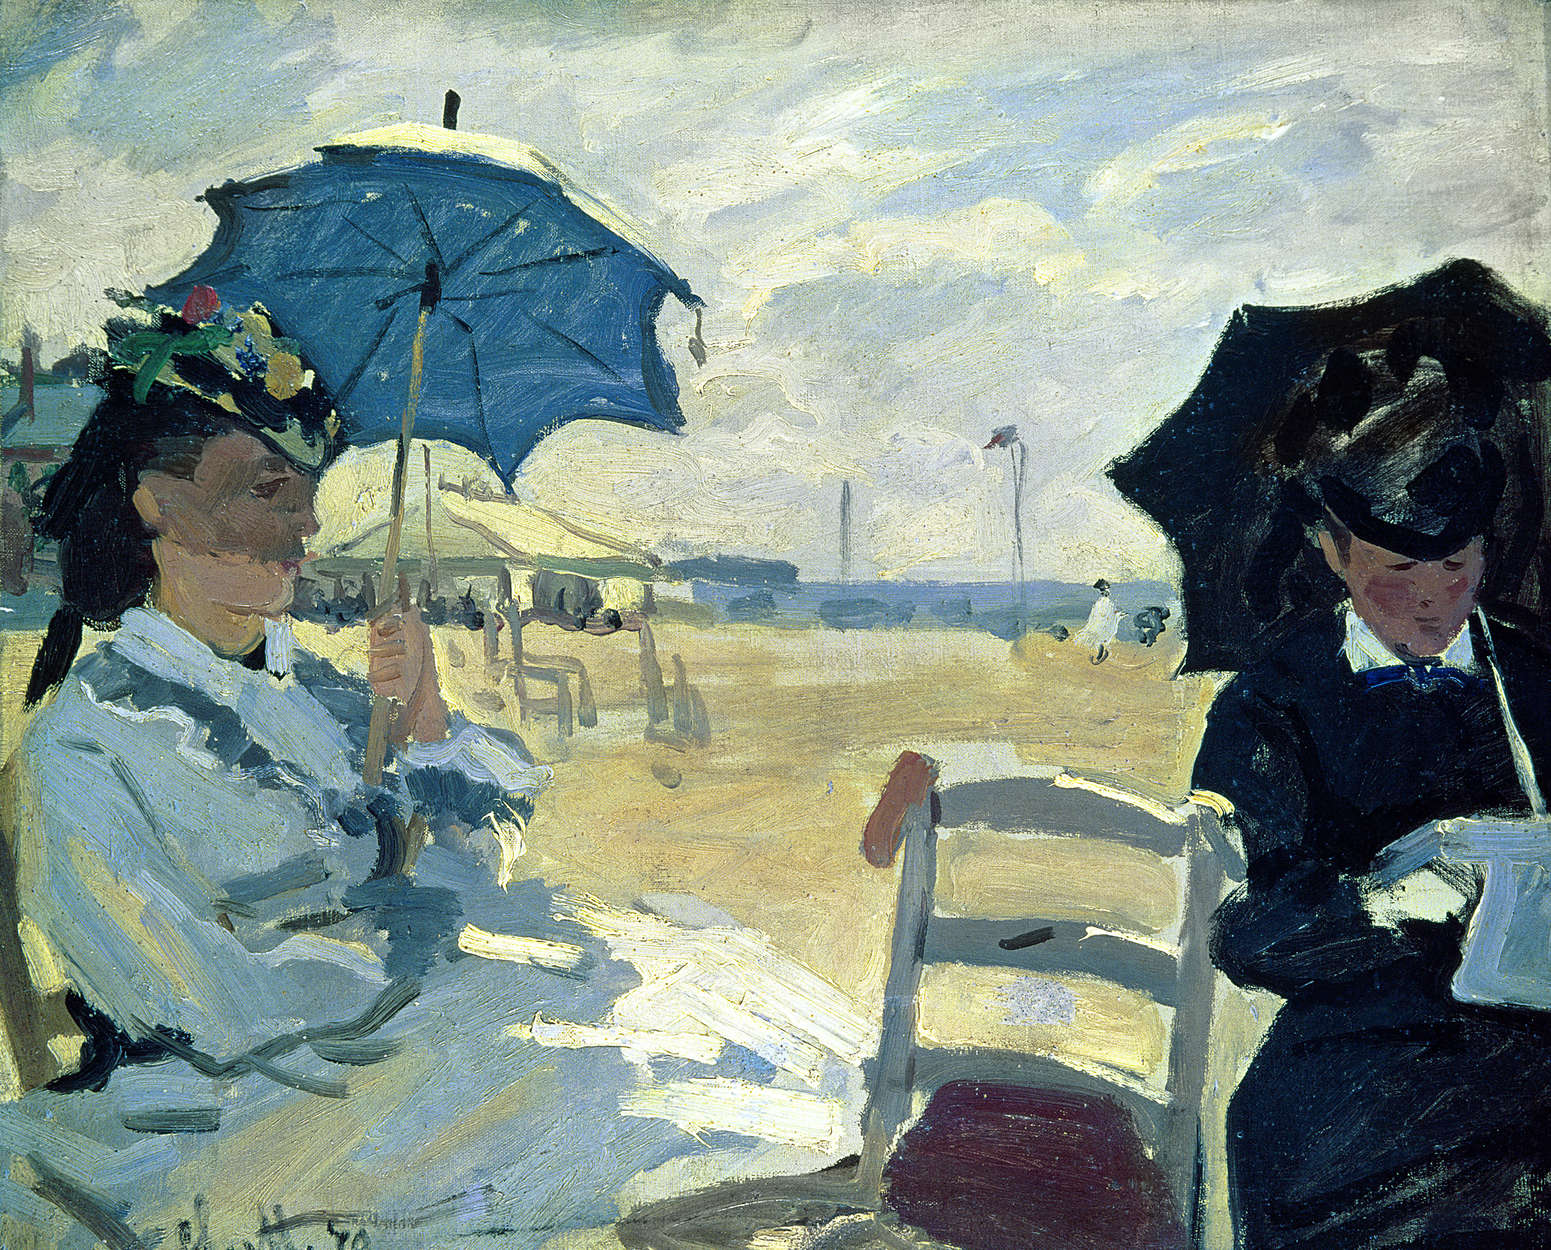             Mural "La playa de Trouville" de Claude Monet
        